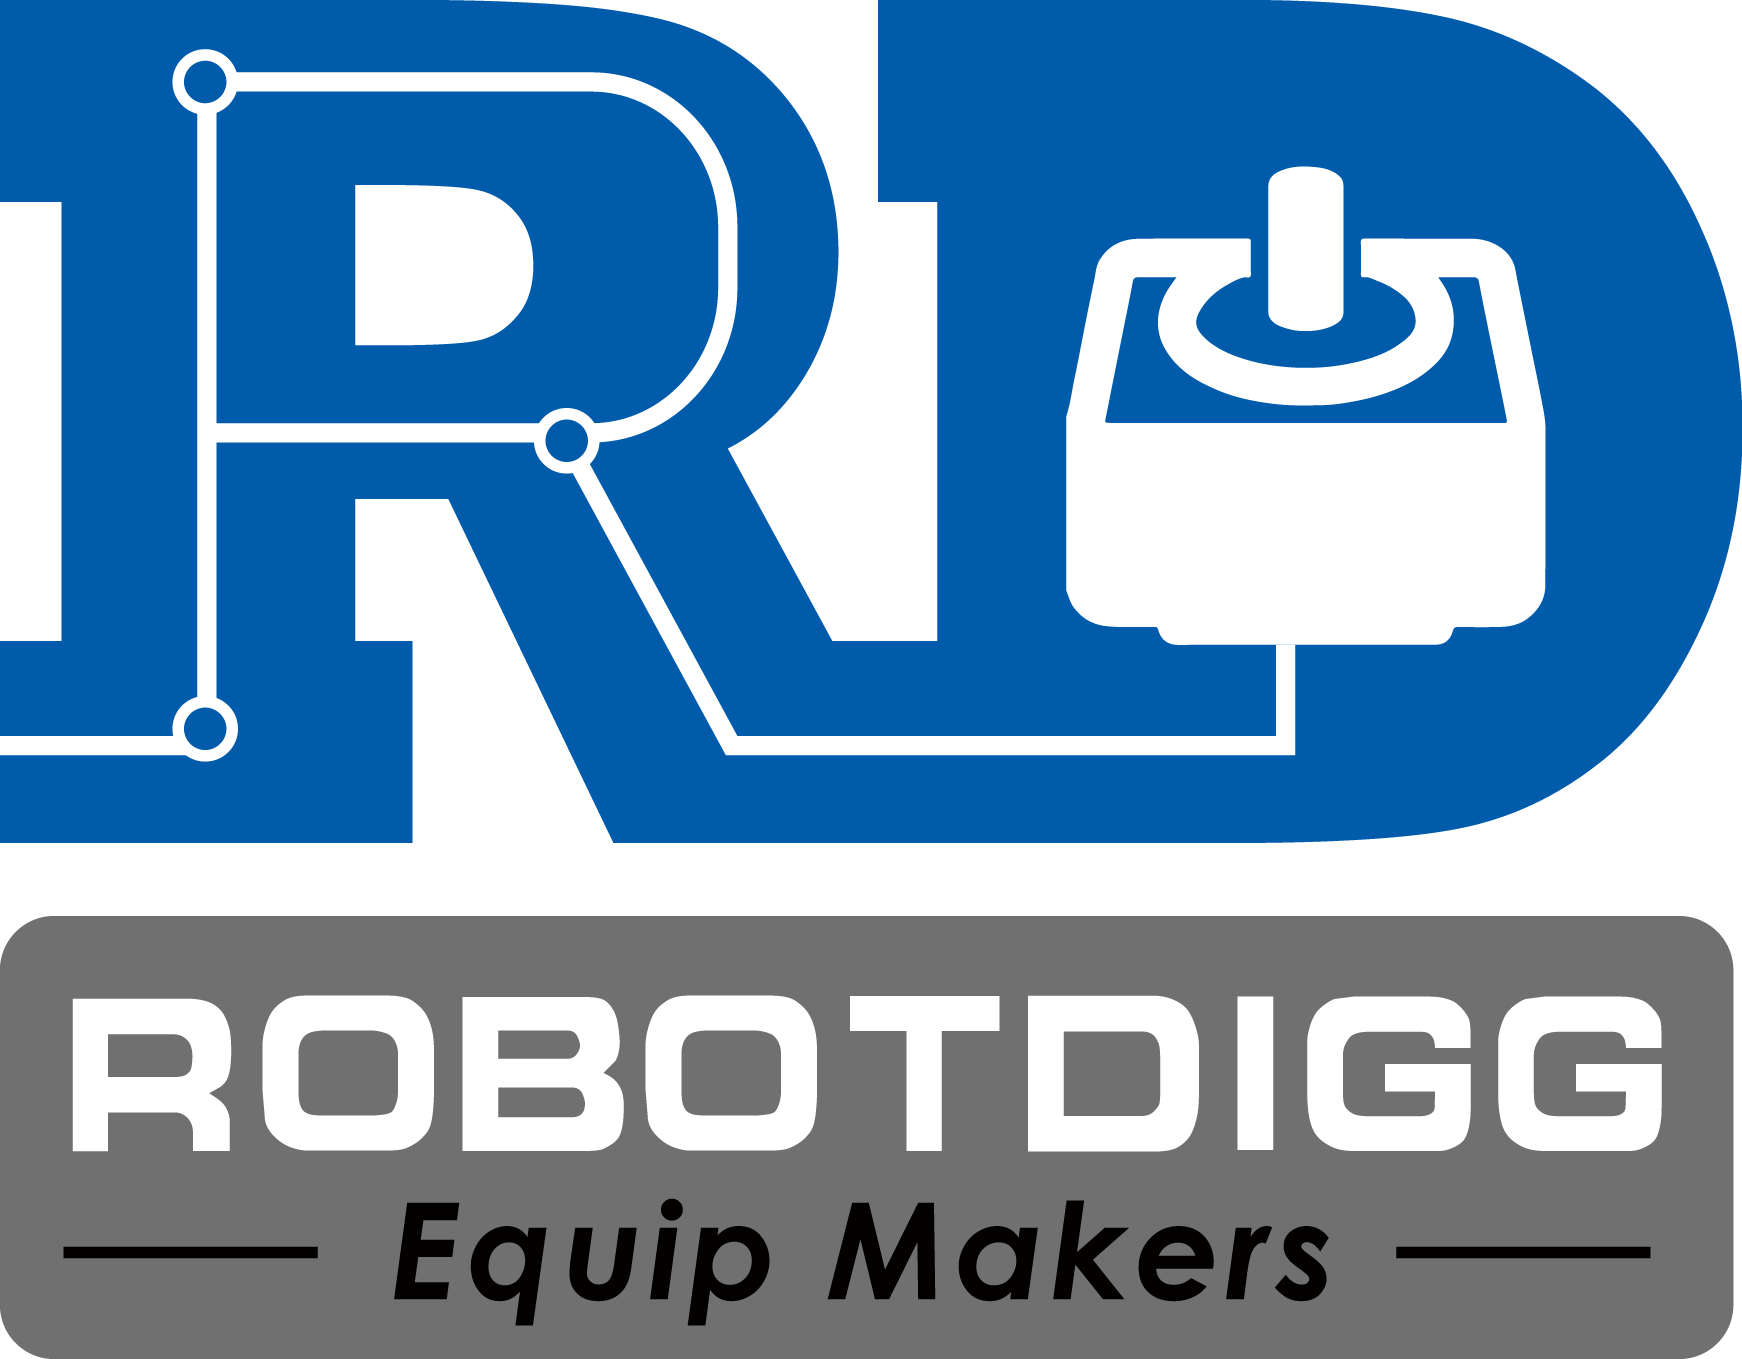 robotdigg logo